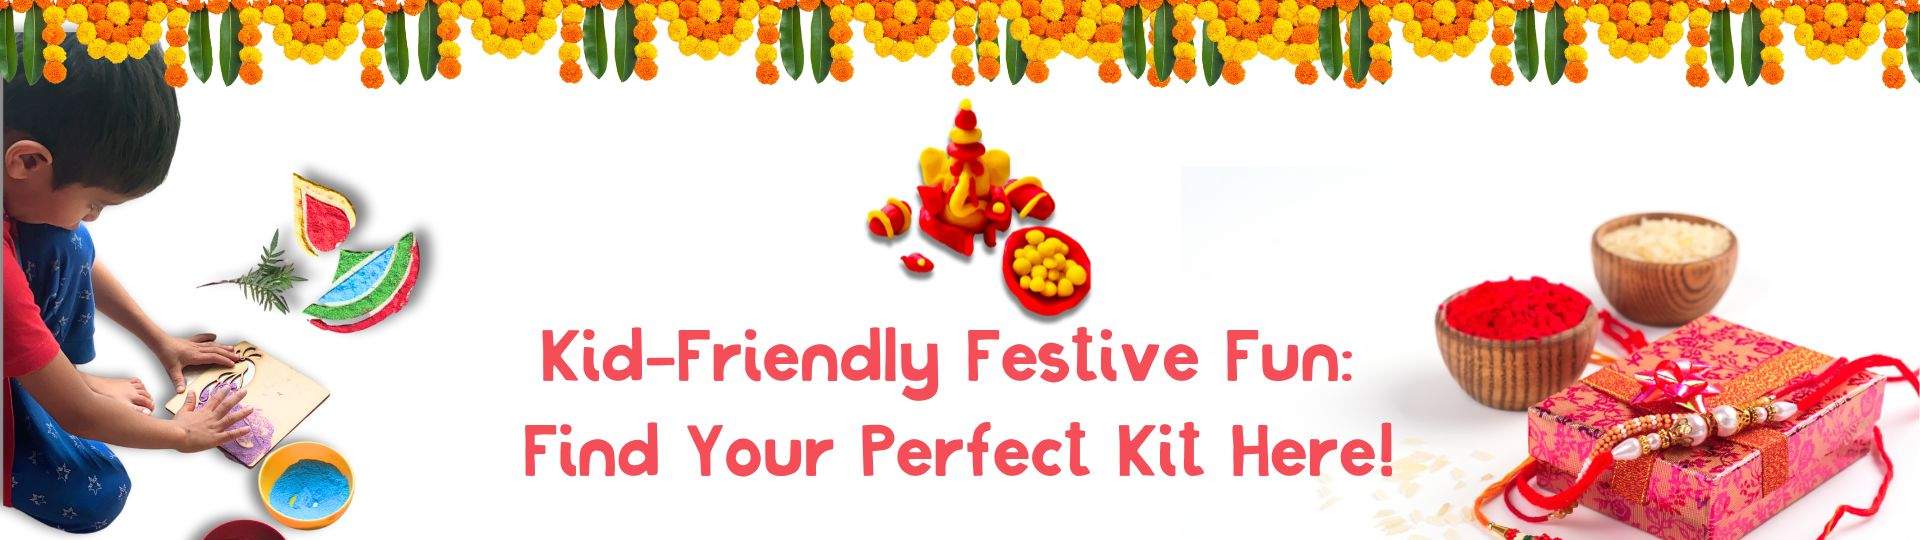 Festival play kits indian culture ganesh making kit christmas DIY kit for children kids